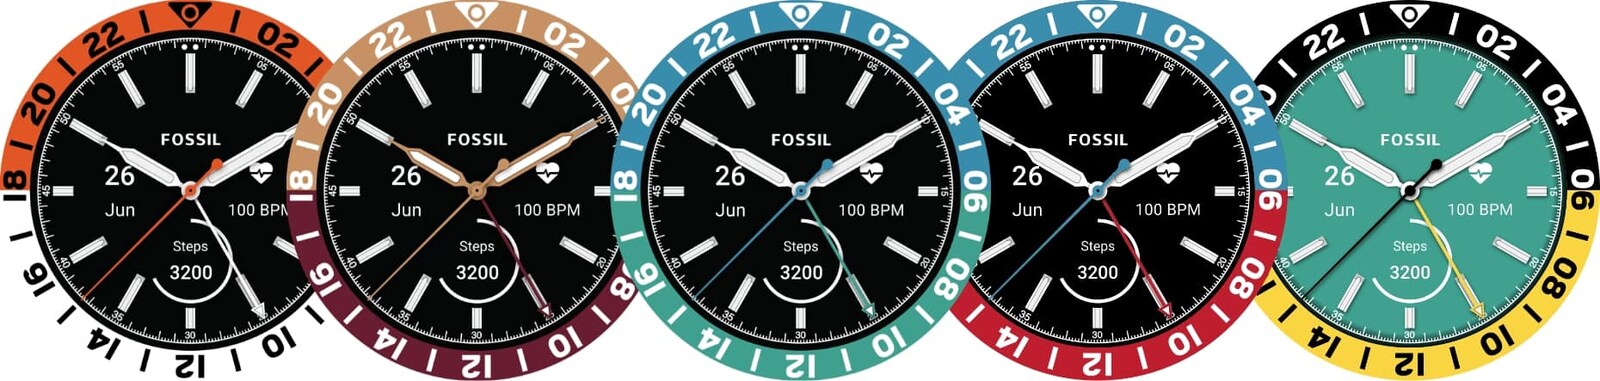 Une variété de cadrans de montre Heritage GMT Fossil caractérisée par des options personnalisées différentes.